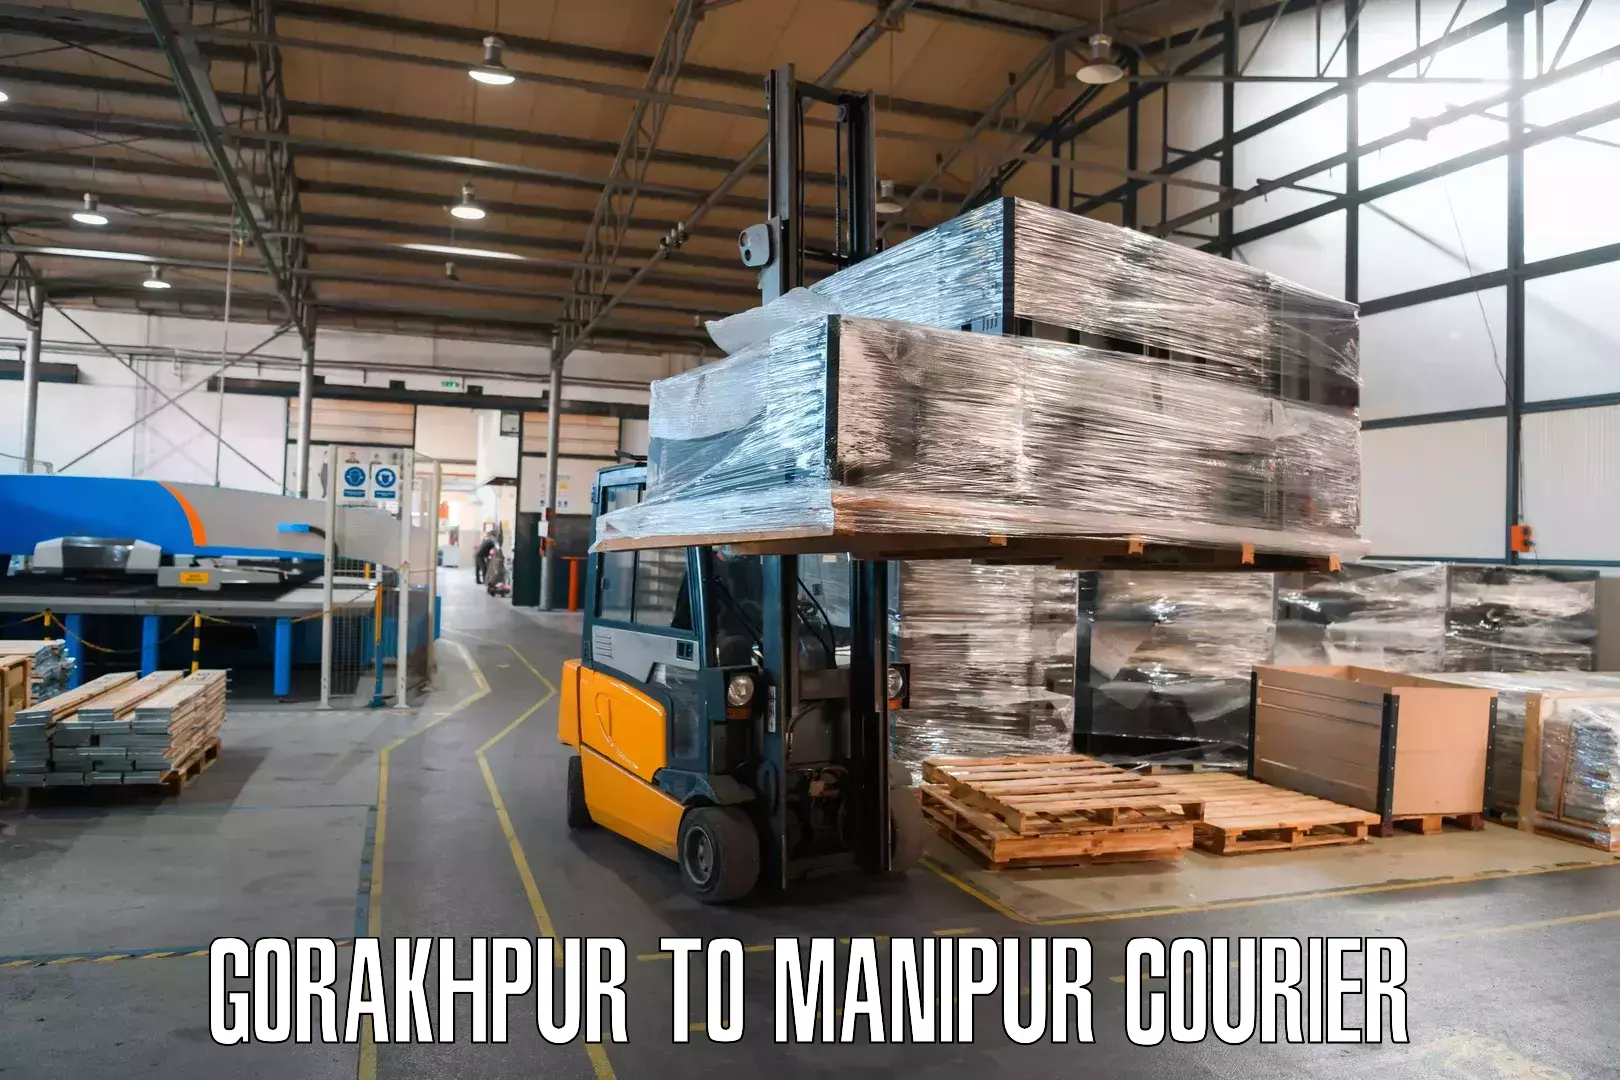 Doorstep delivery service Gorakhpur to IIIT Senapati